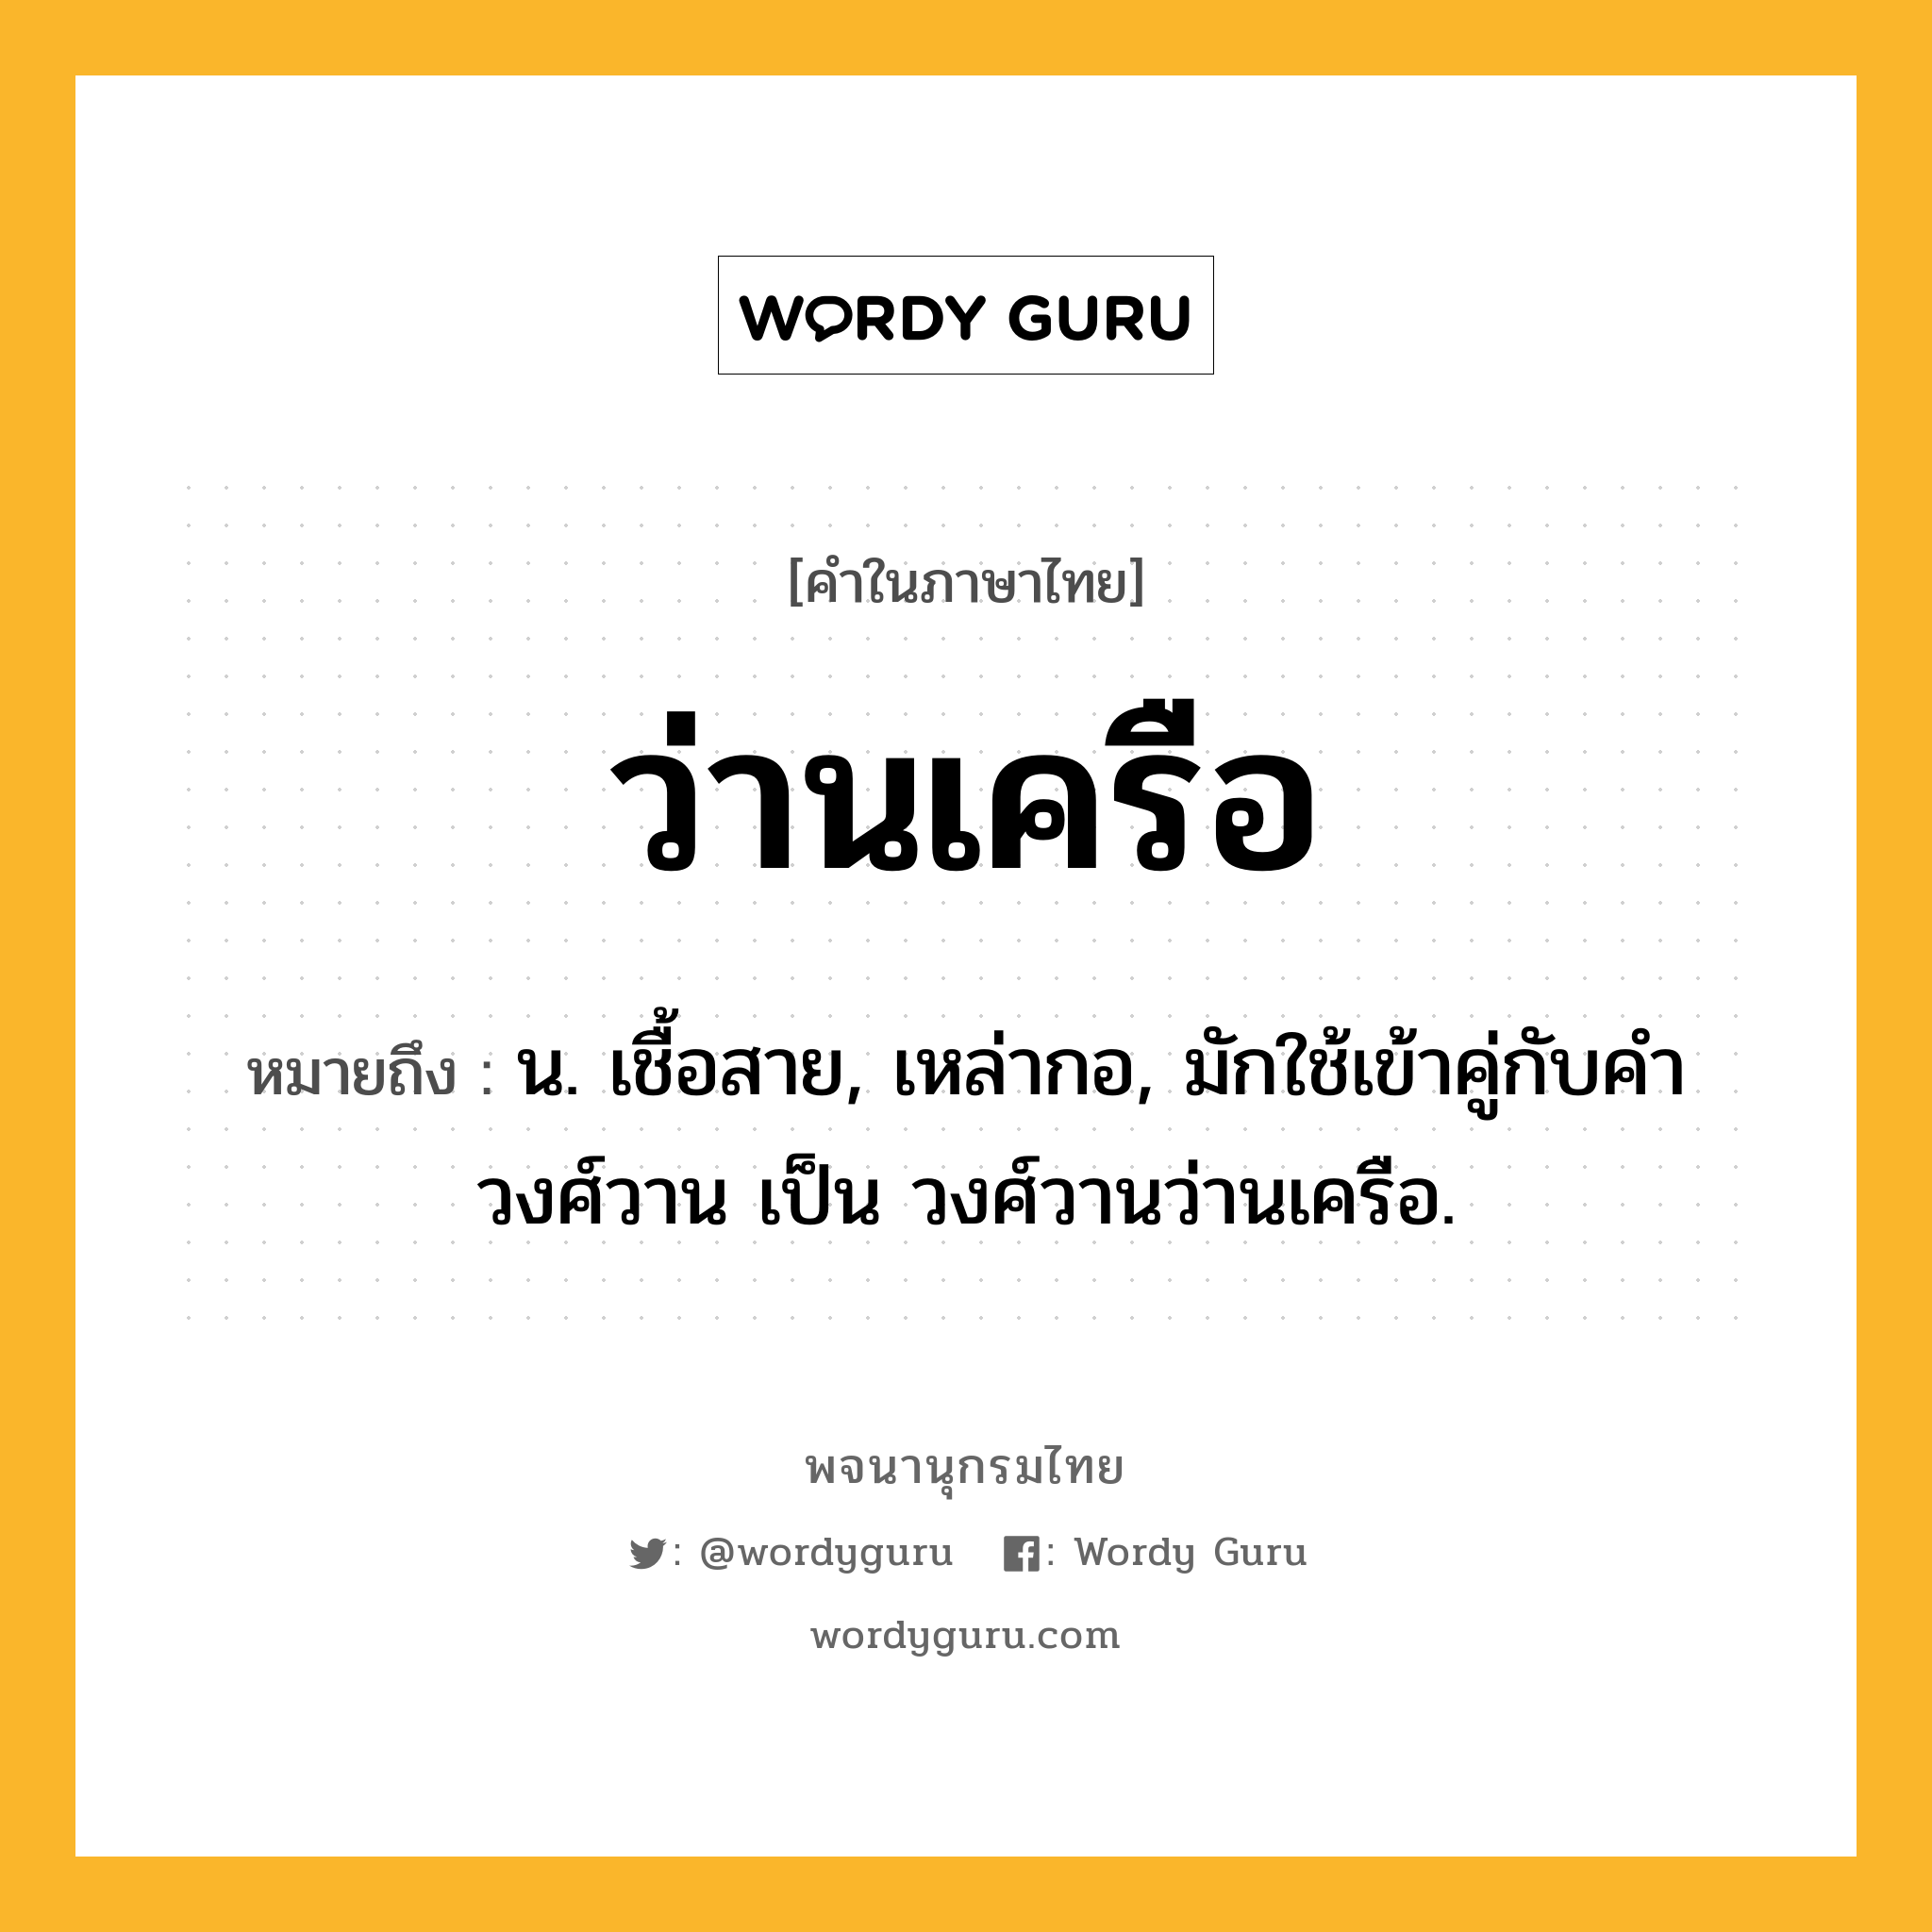 ว่านเครือ ความหมาย หมายถึงอะไร?, คำในภาษาไทย ว่านเครือ หมายถึง น. เชื้อสาย, เหล่ากอ, มักใช้เข้าคู่กับคำ วงศ์วาน เป็น วงศ์วานว่านเครือ.